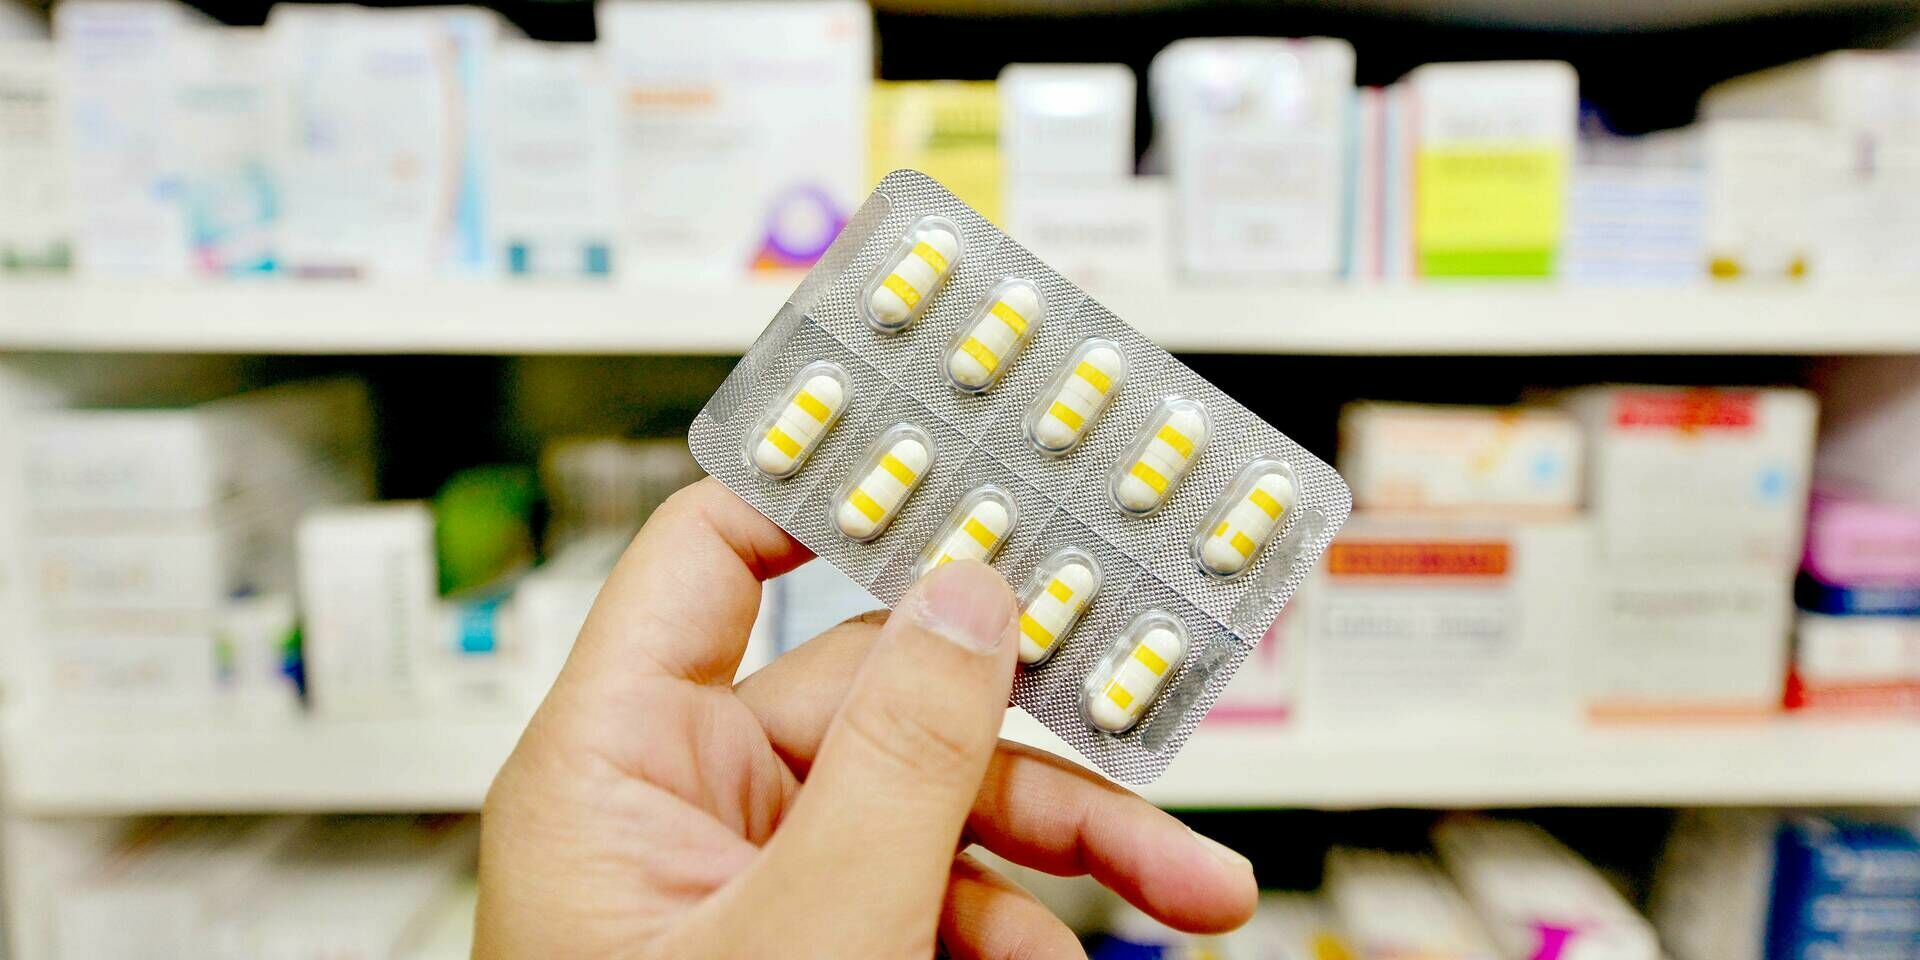 "Второй лишний": Правительство лишит пациентов права выбора жизненно важных лекарств